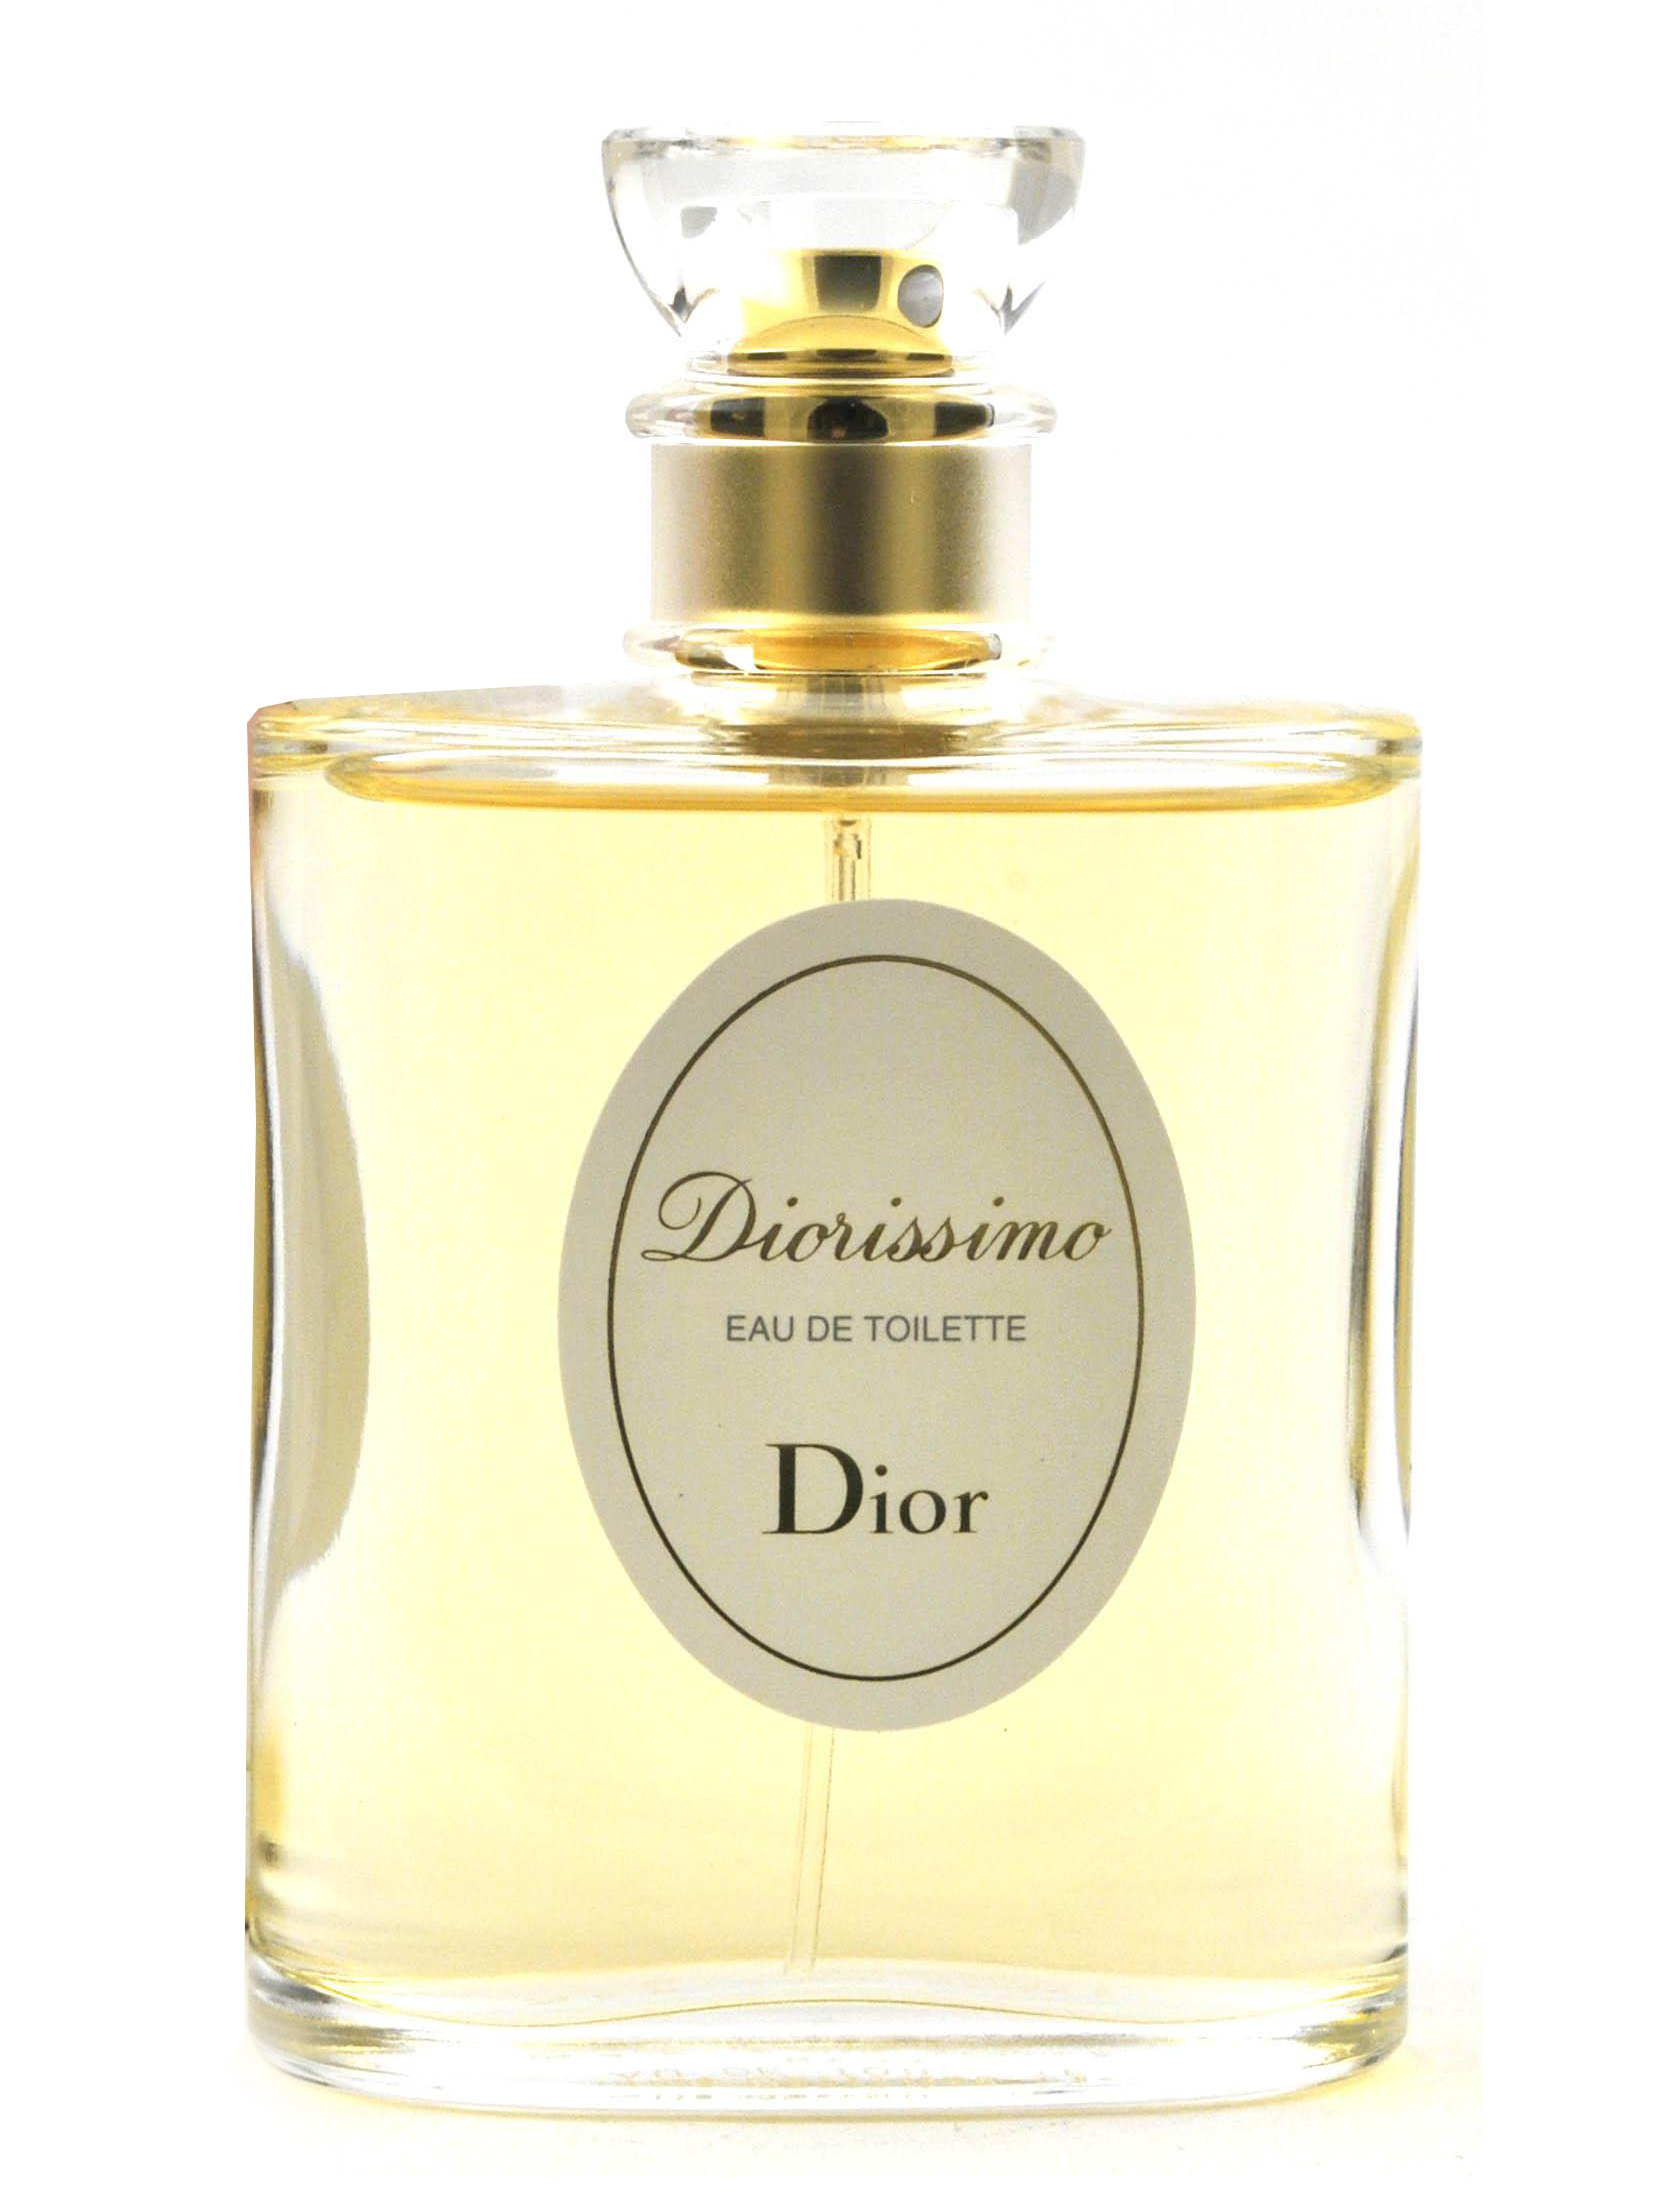 Parfum Dior - Homecare24